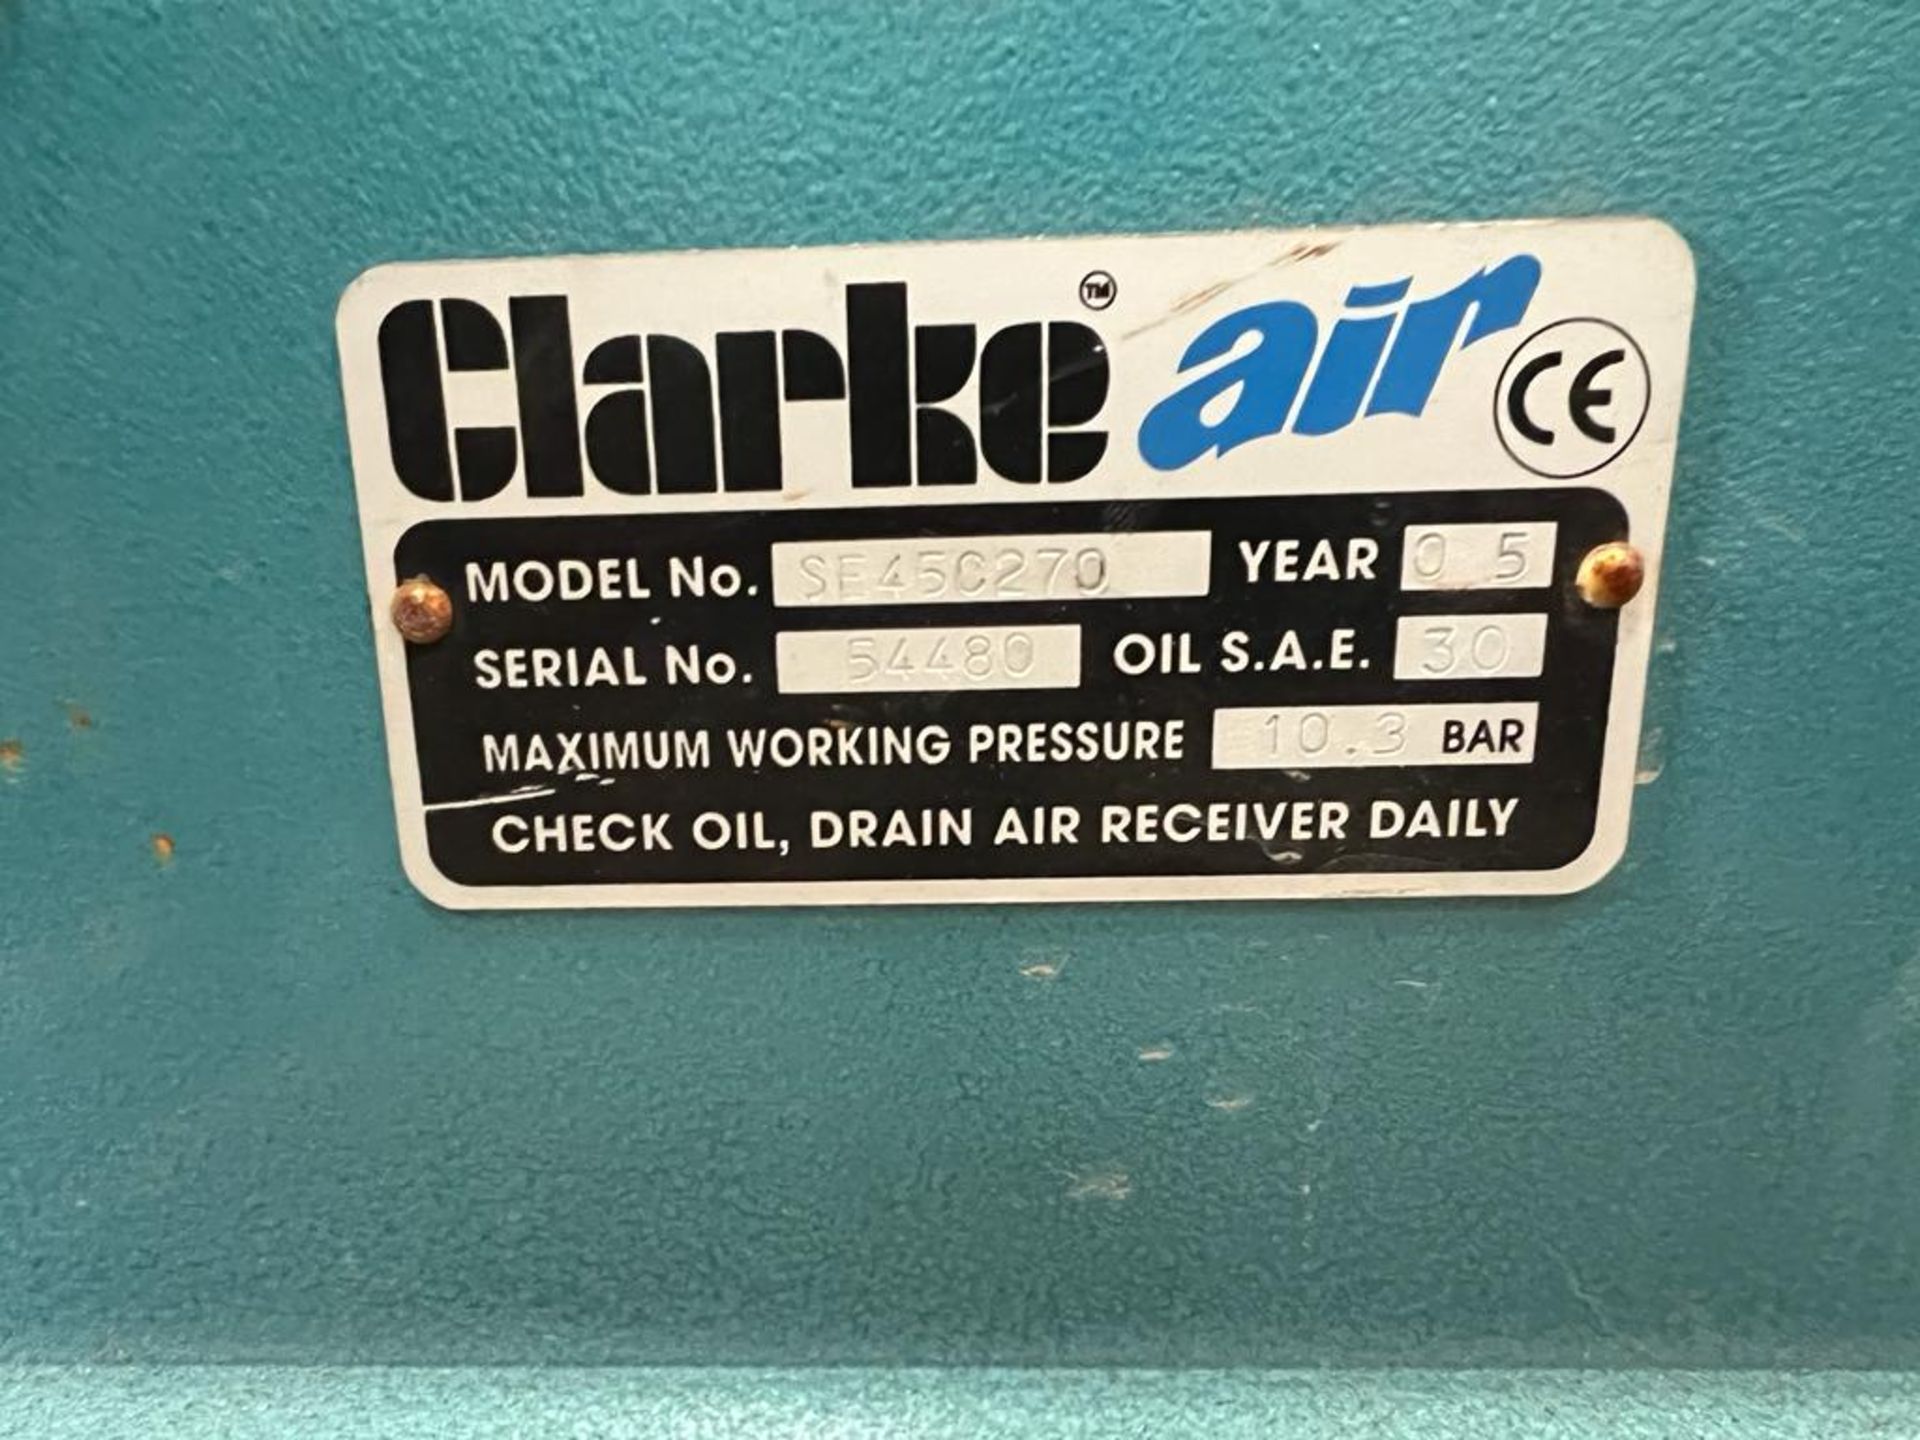 2005 Clarke Air SE45C270 Compressor *NO VAT* - Bild 3 aus 5